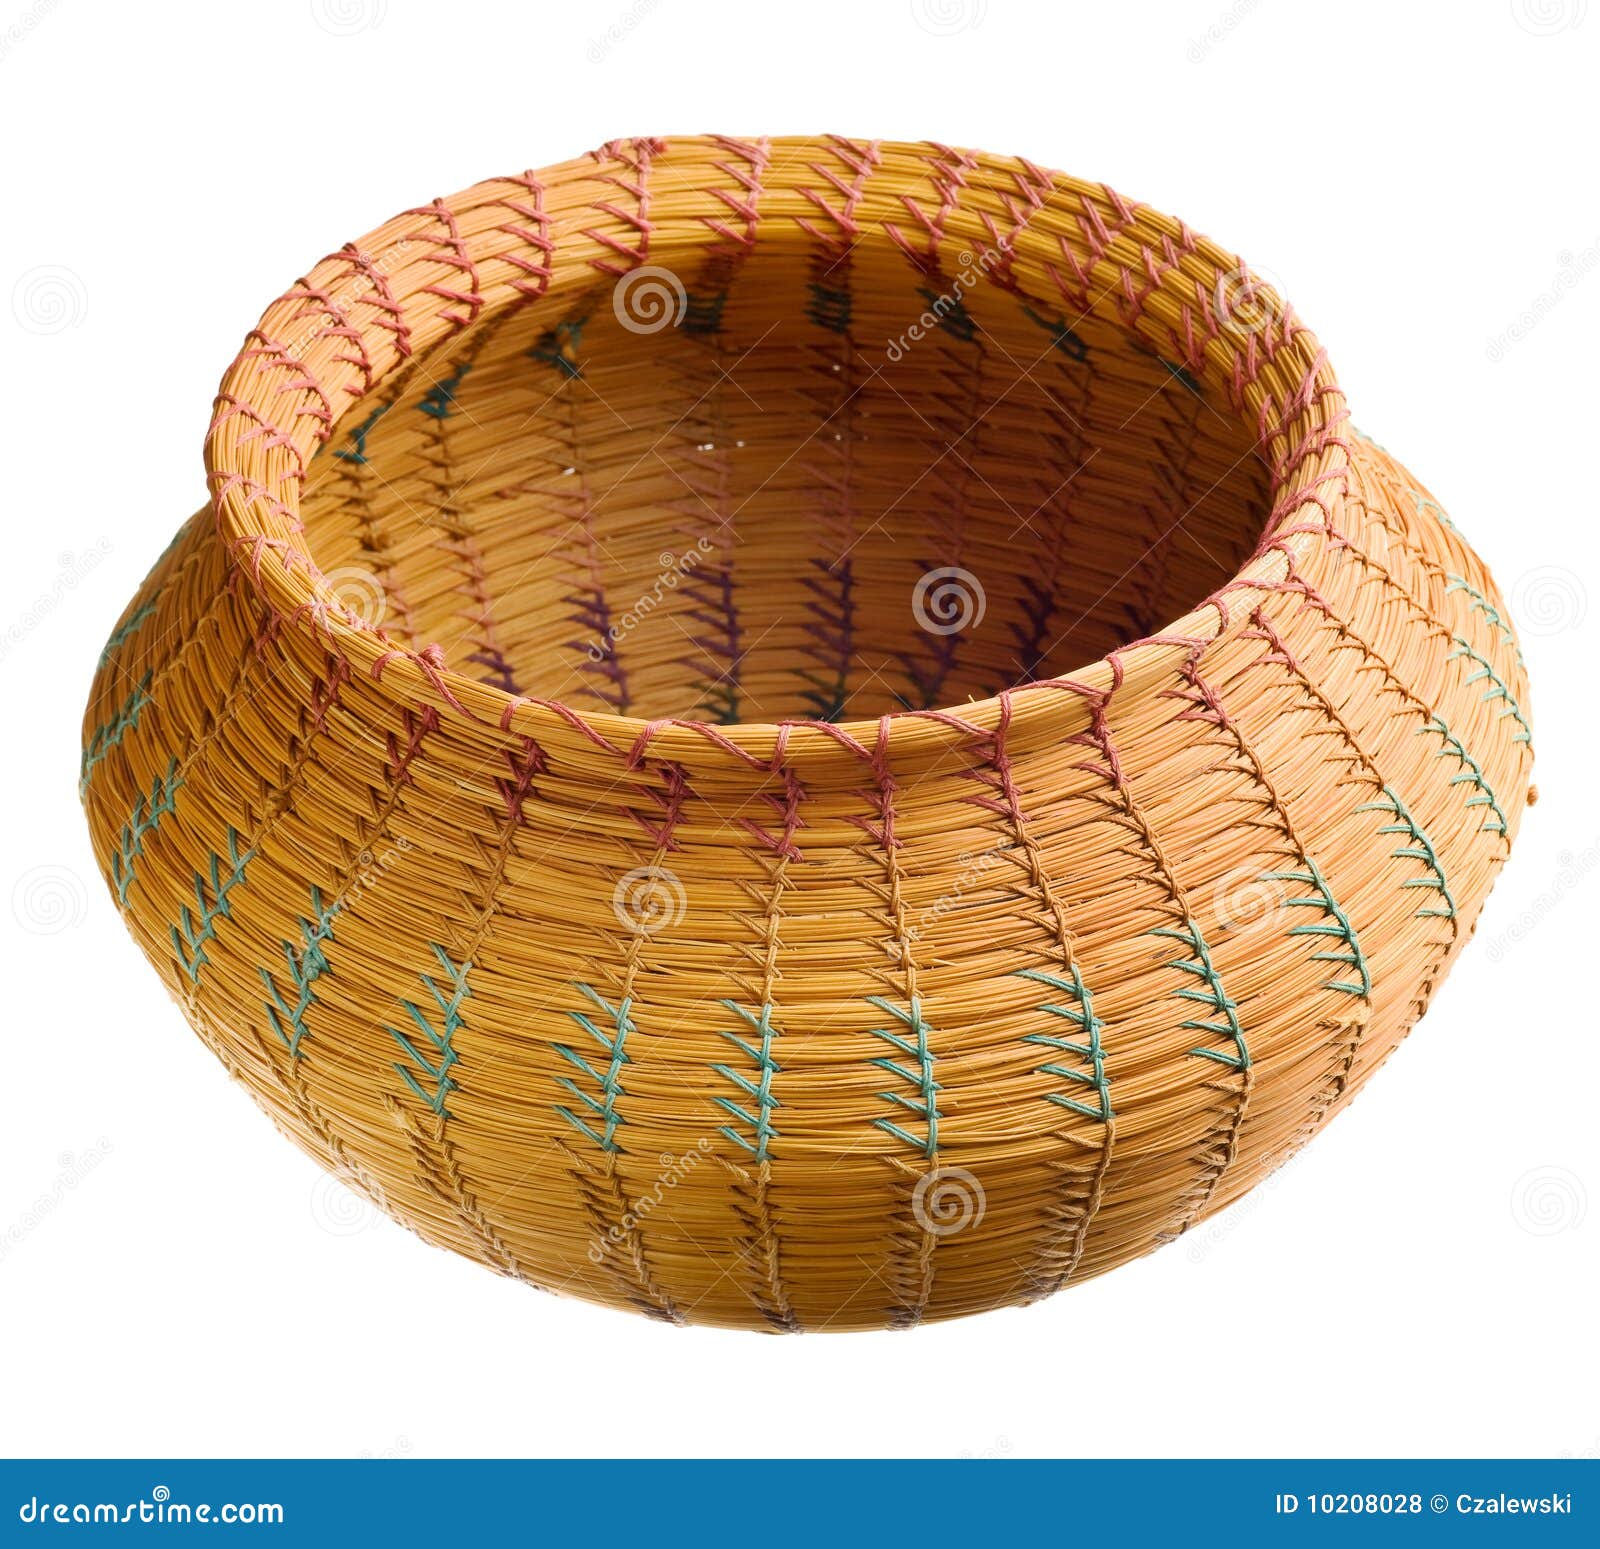 cherokee handwoven basket